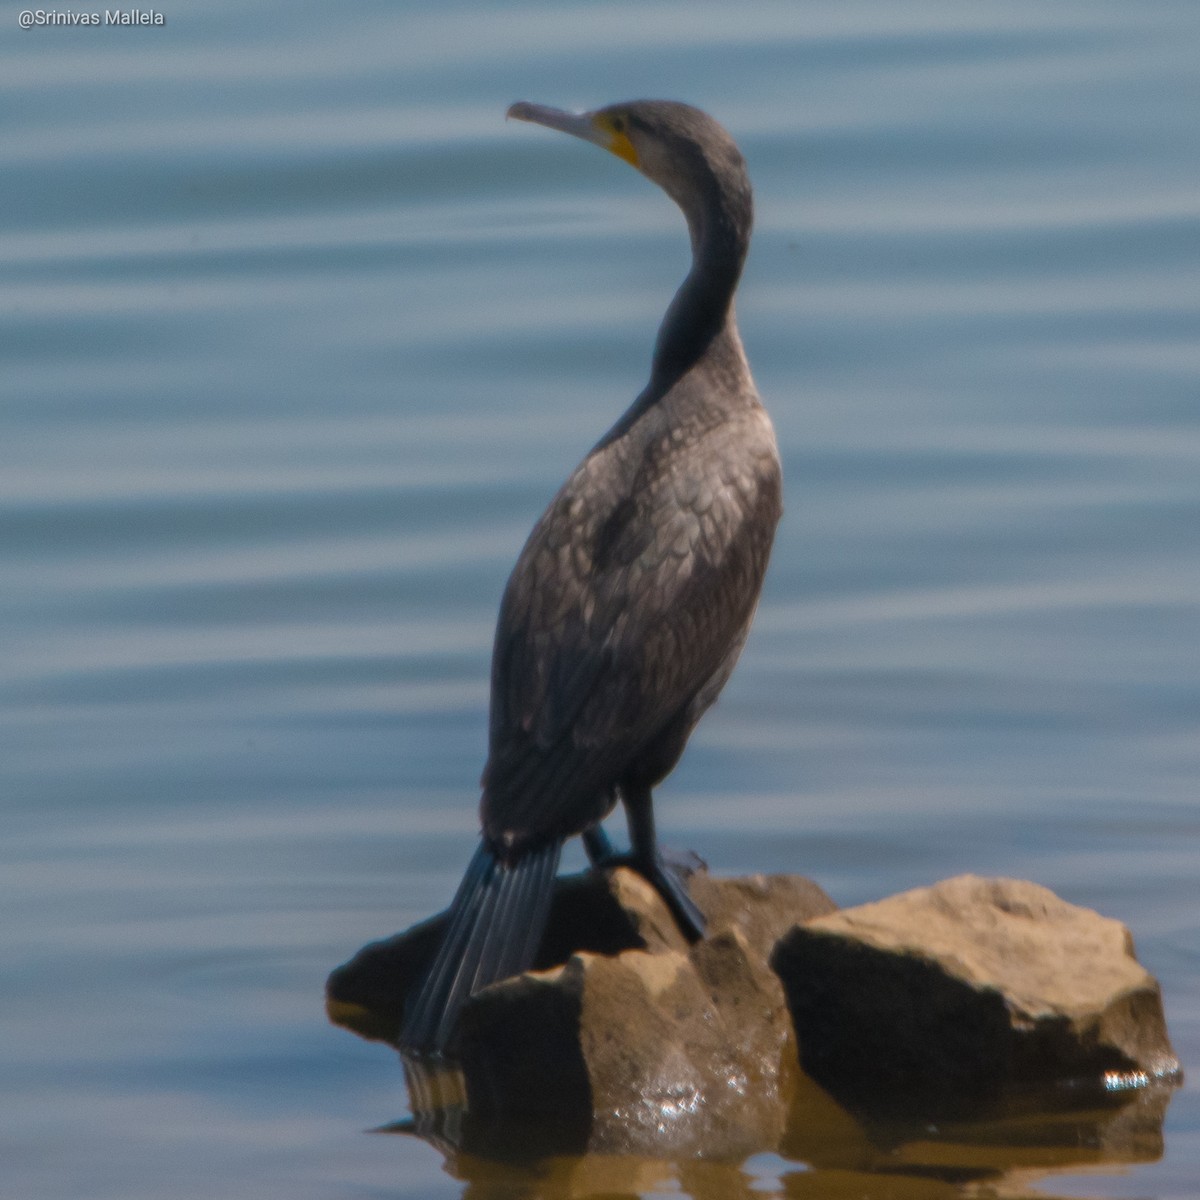 Great Cormorant - Srinivas Mallela